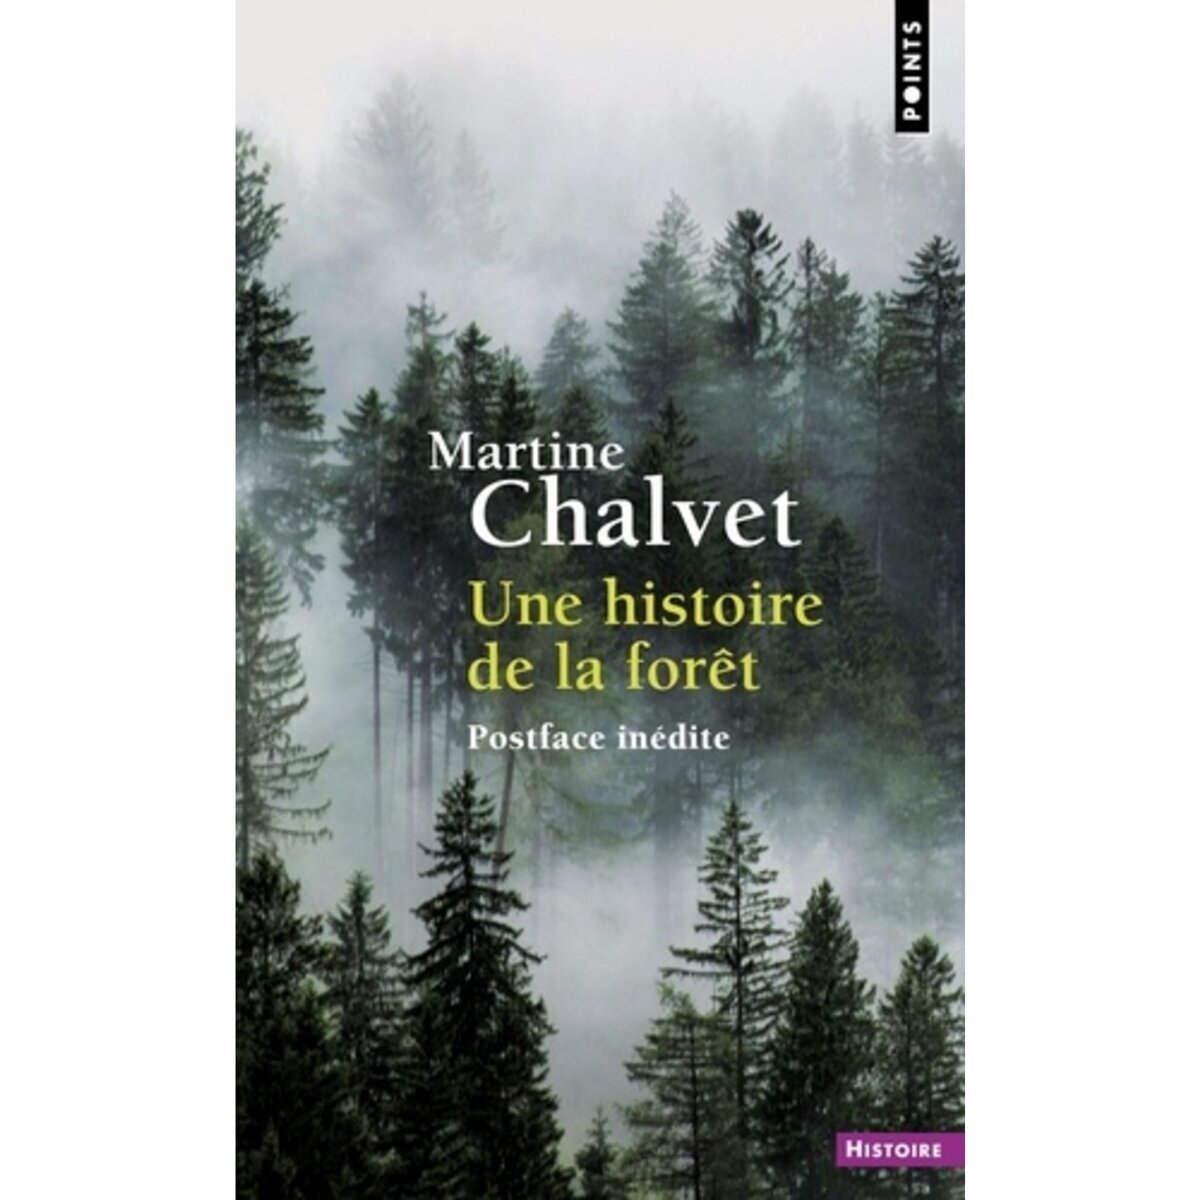  UNE HISTOIRE DE LA FORET, Chalvet Martine